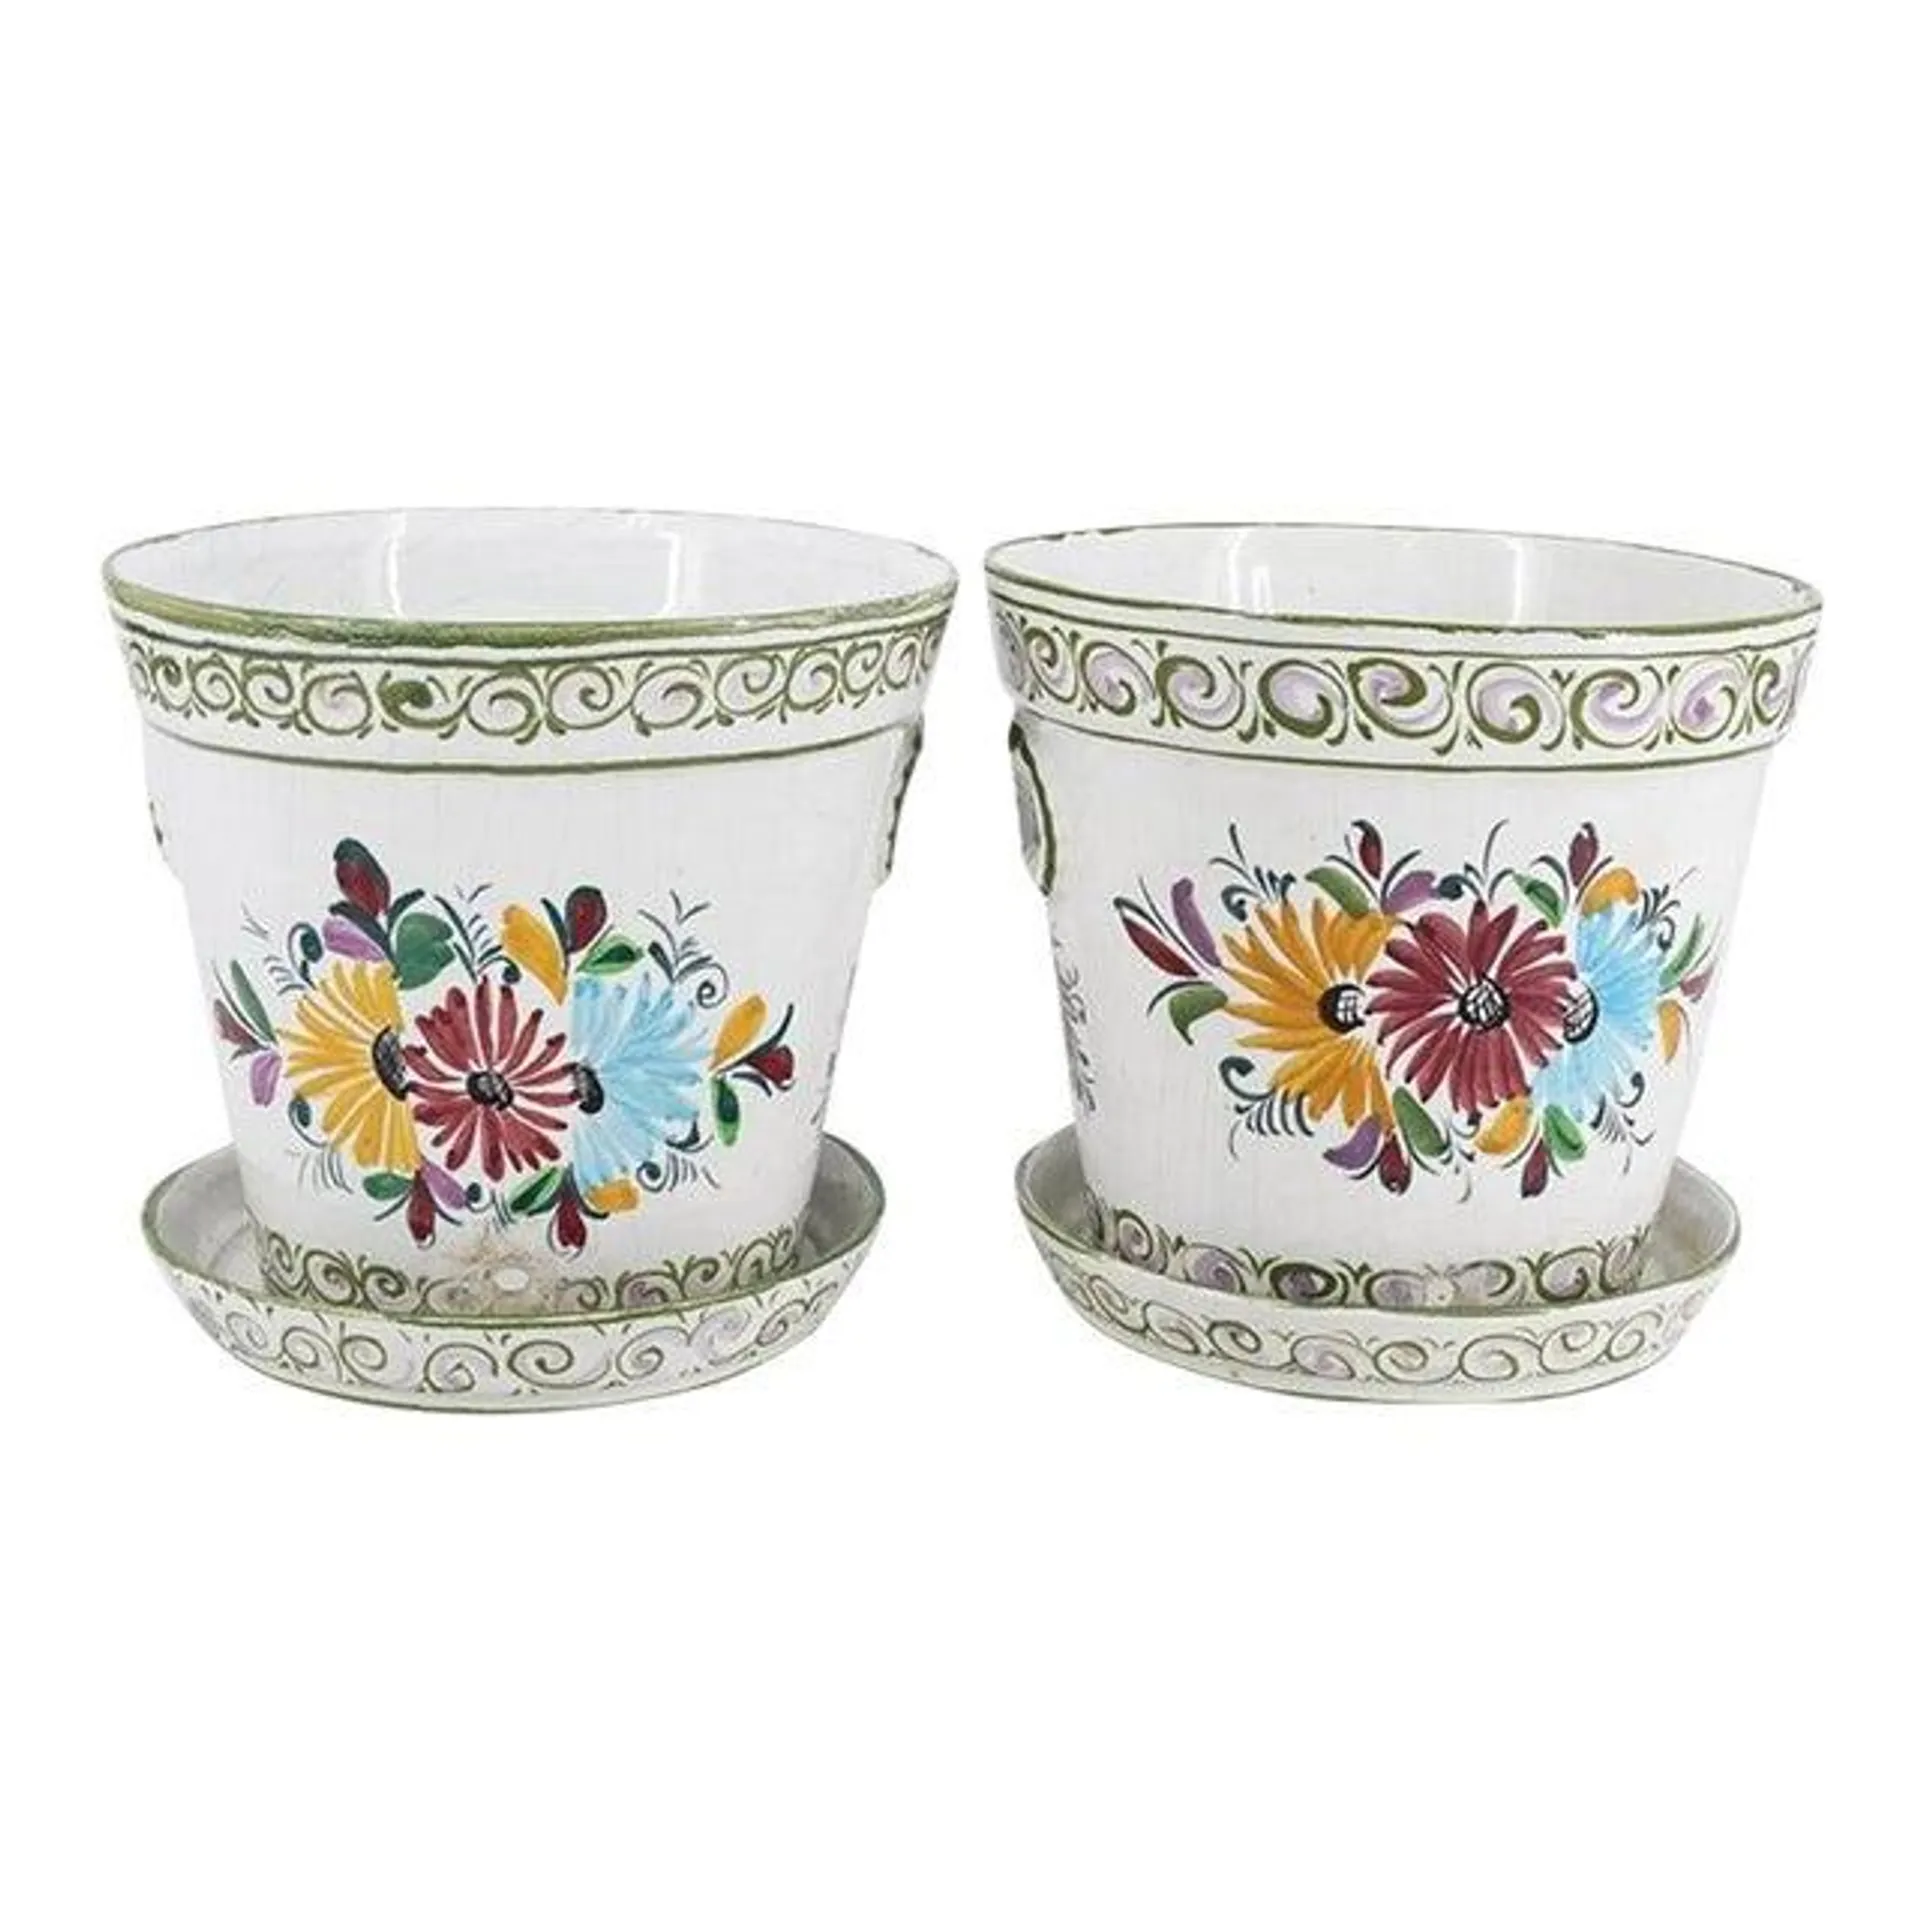 Pair of Vintage Leart Reel Portuguese Porcelain Planters 20 C.